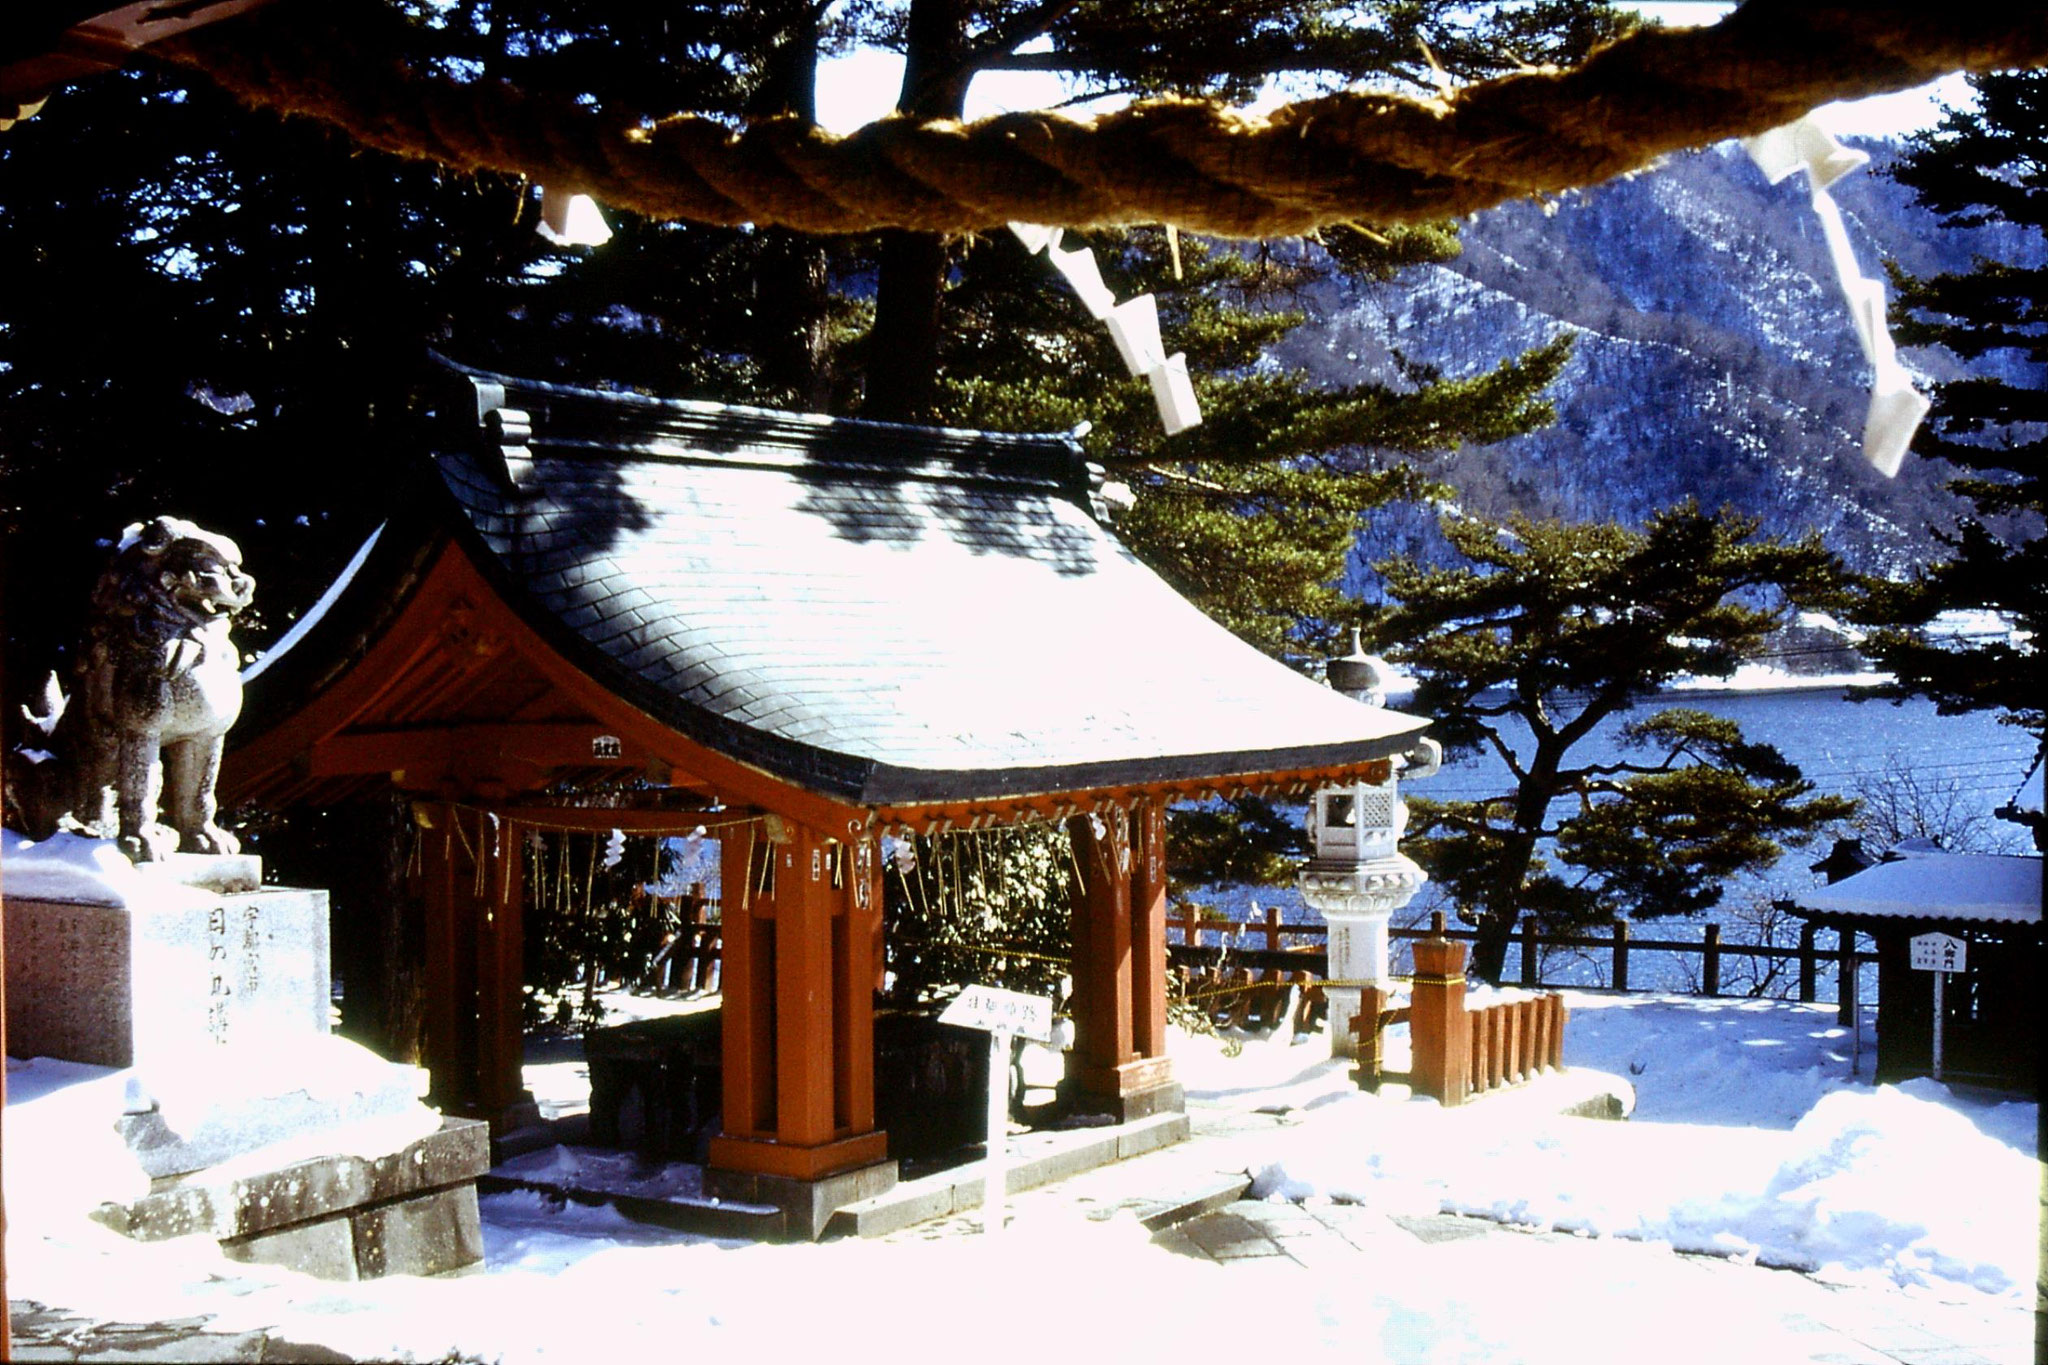 30/1/1989: 7: Futarasan shrine handwashing pavilion